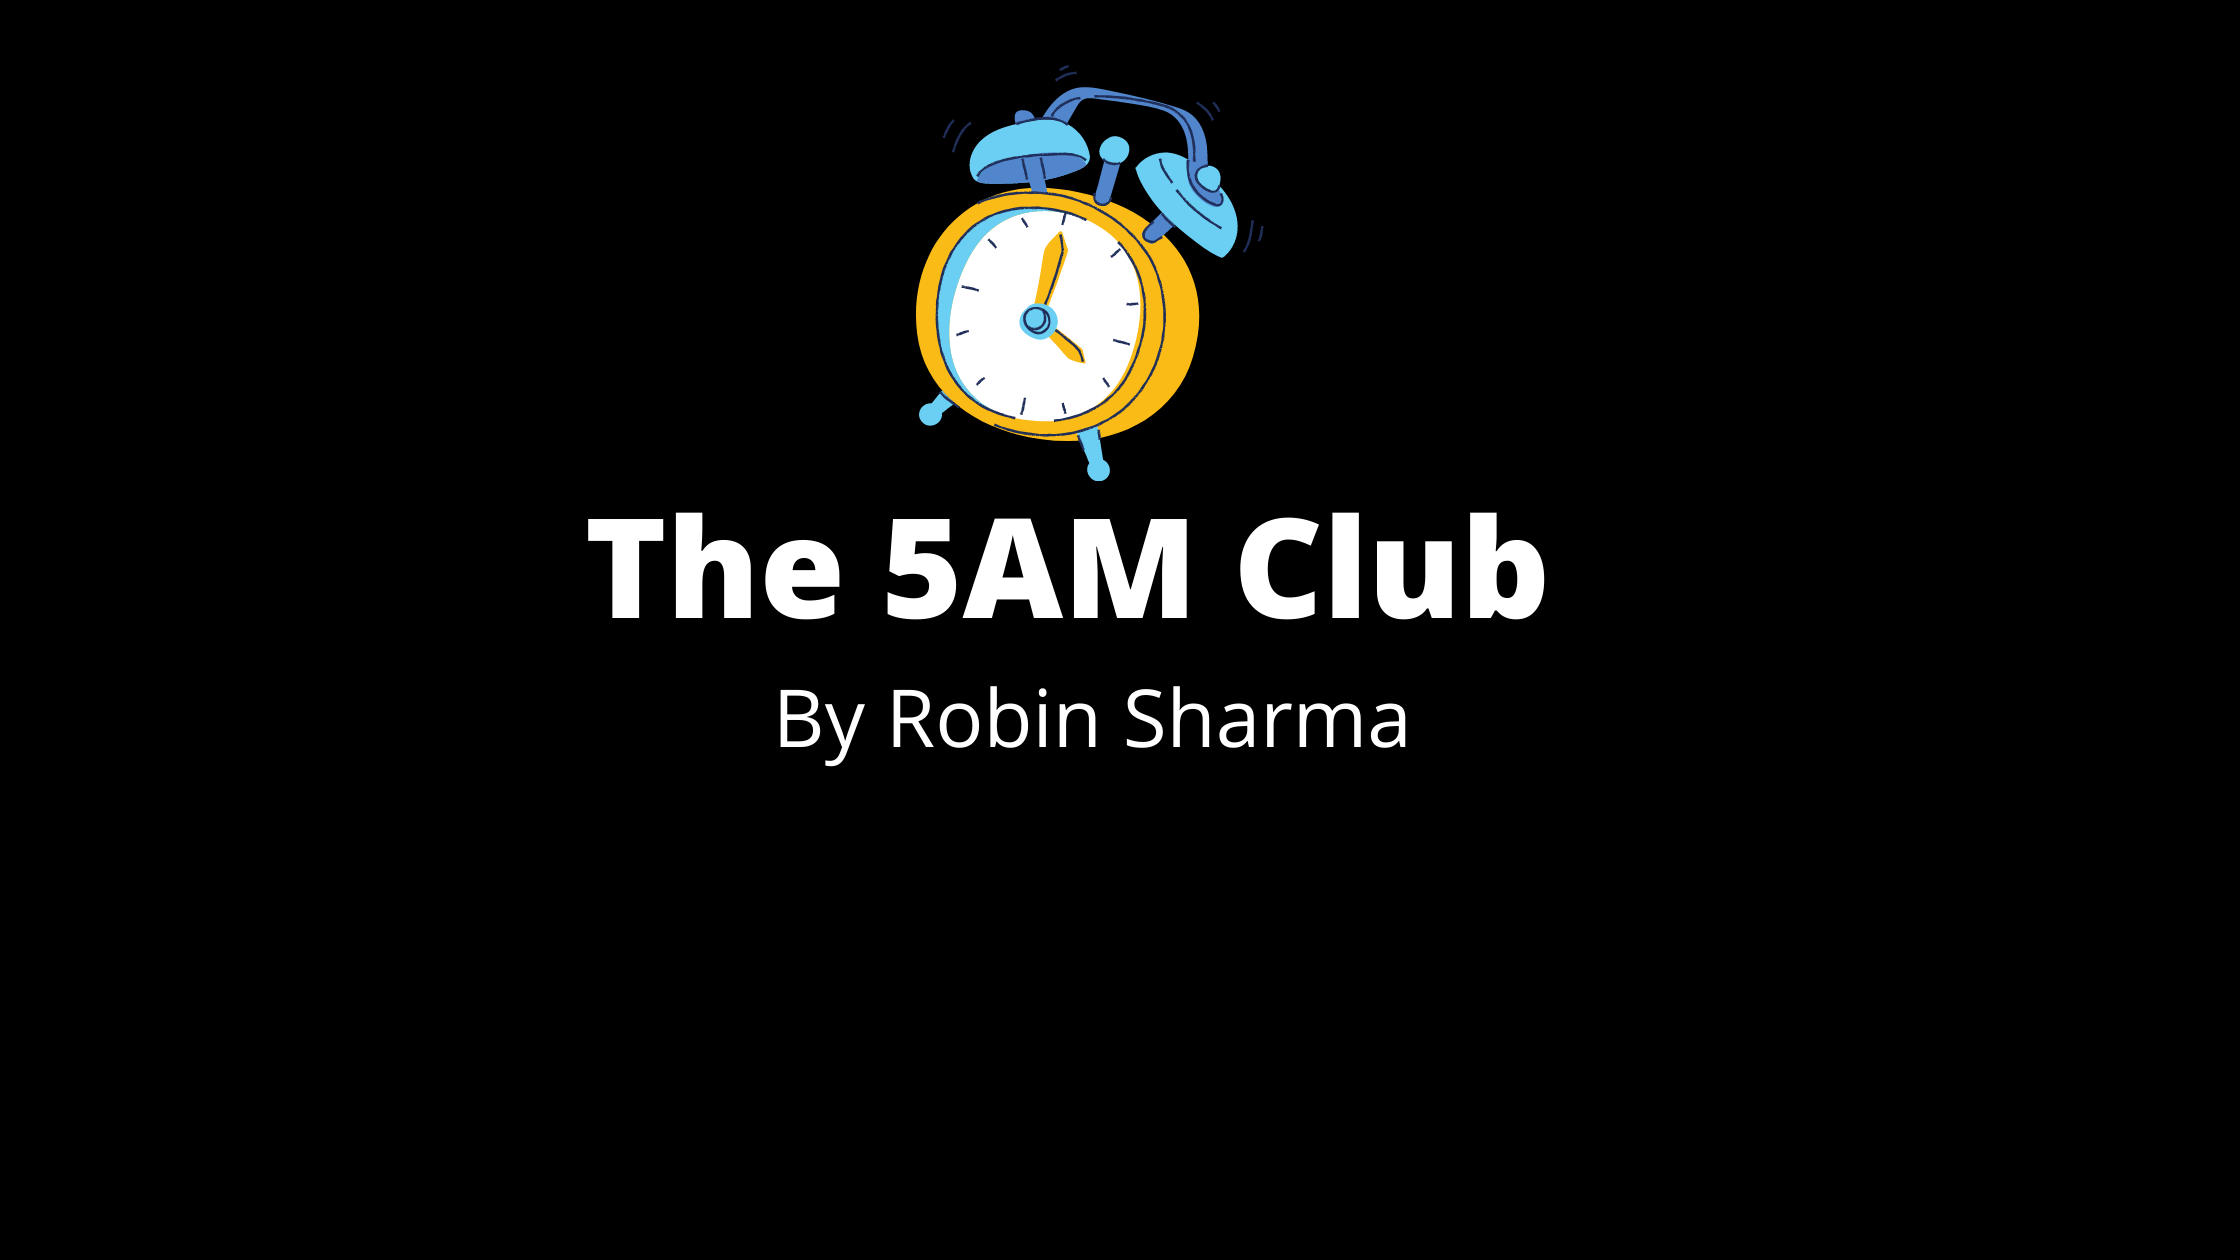 The 5Am Club